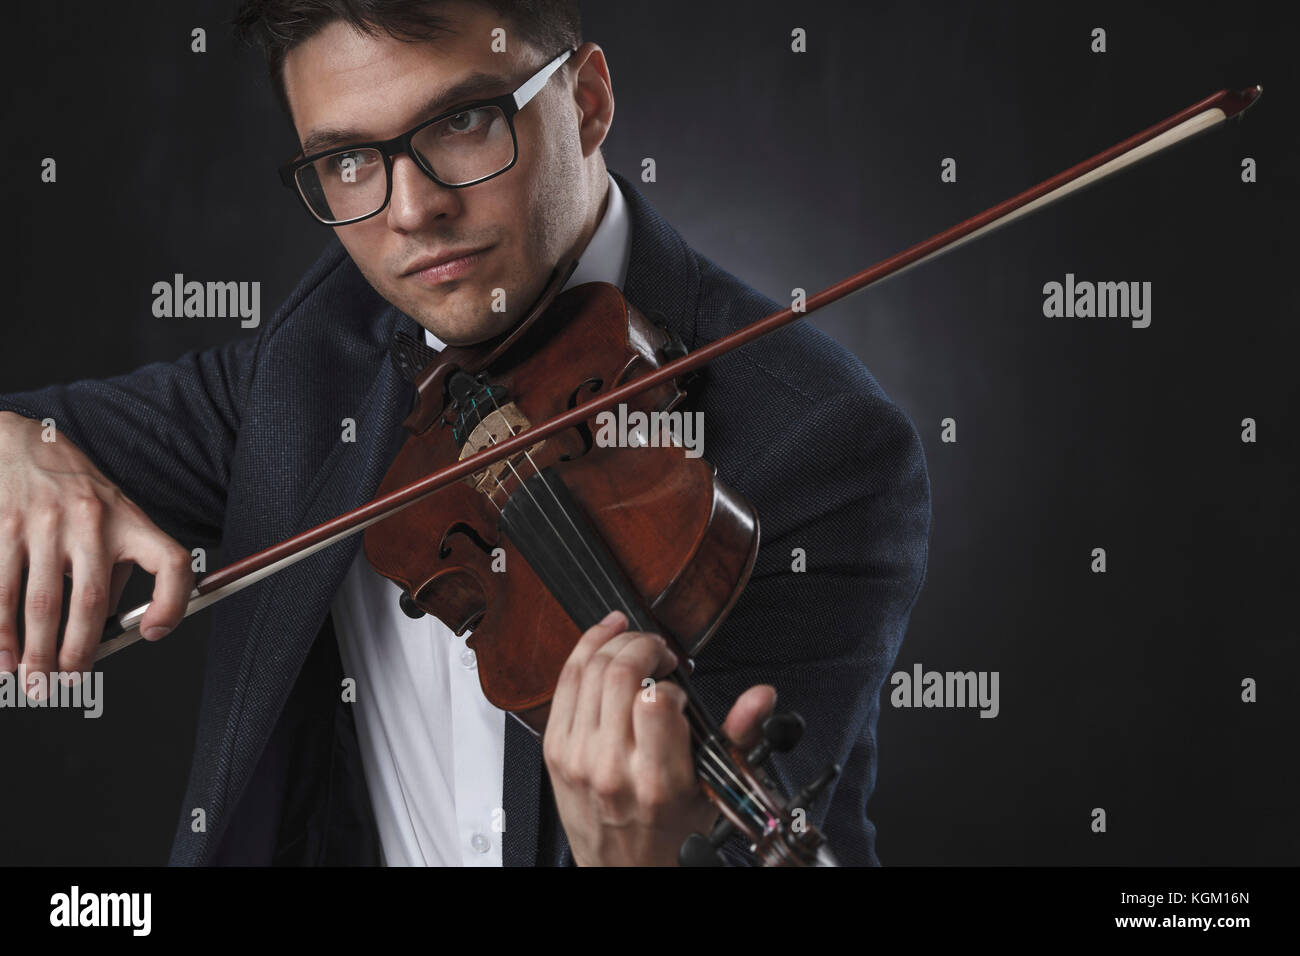 Schöner Mann tragen formals spielen Geige auf schwarzem Hintergrund Stockfoto